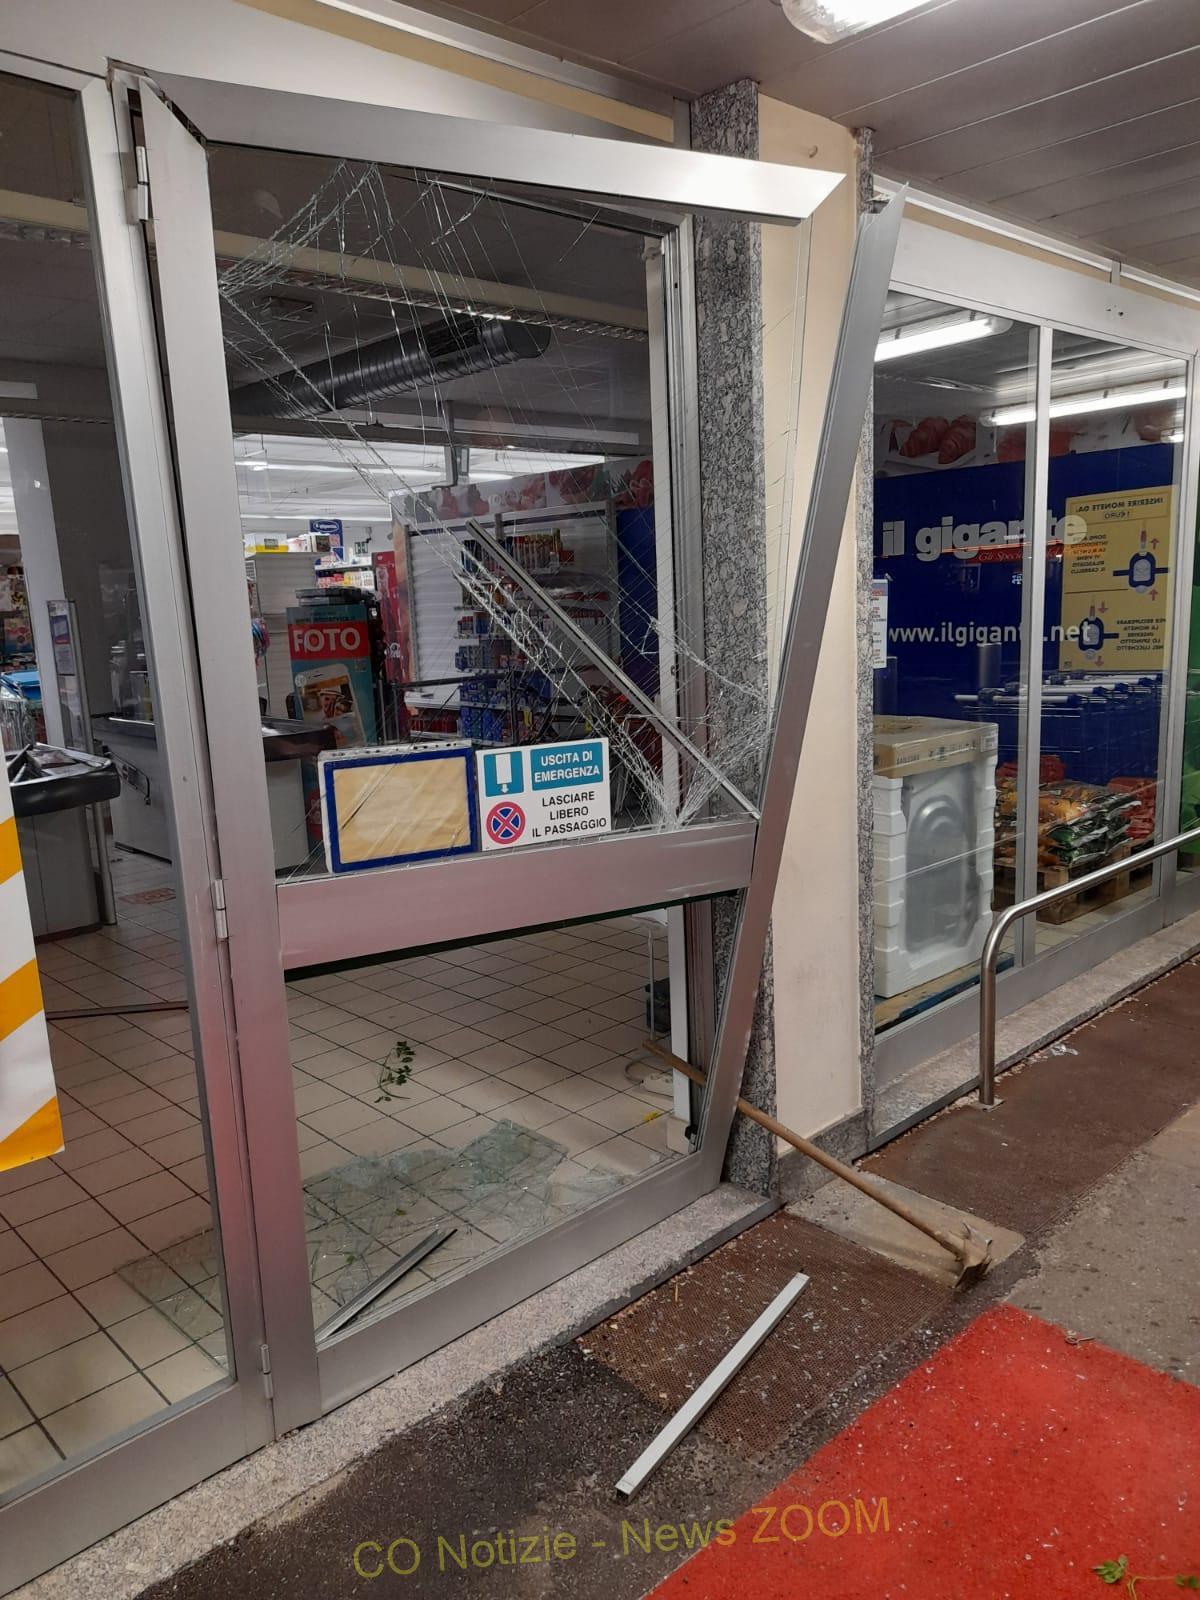 . Lunga scia di furti ai supermercati. ll Gigante di Lonate colpito 2 volte - 13/09/2022